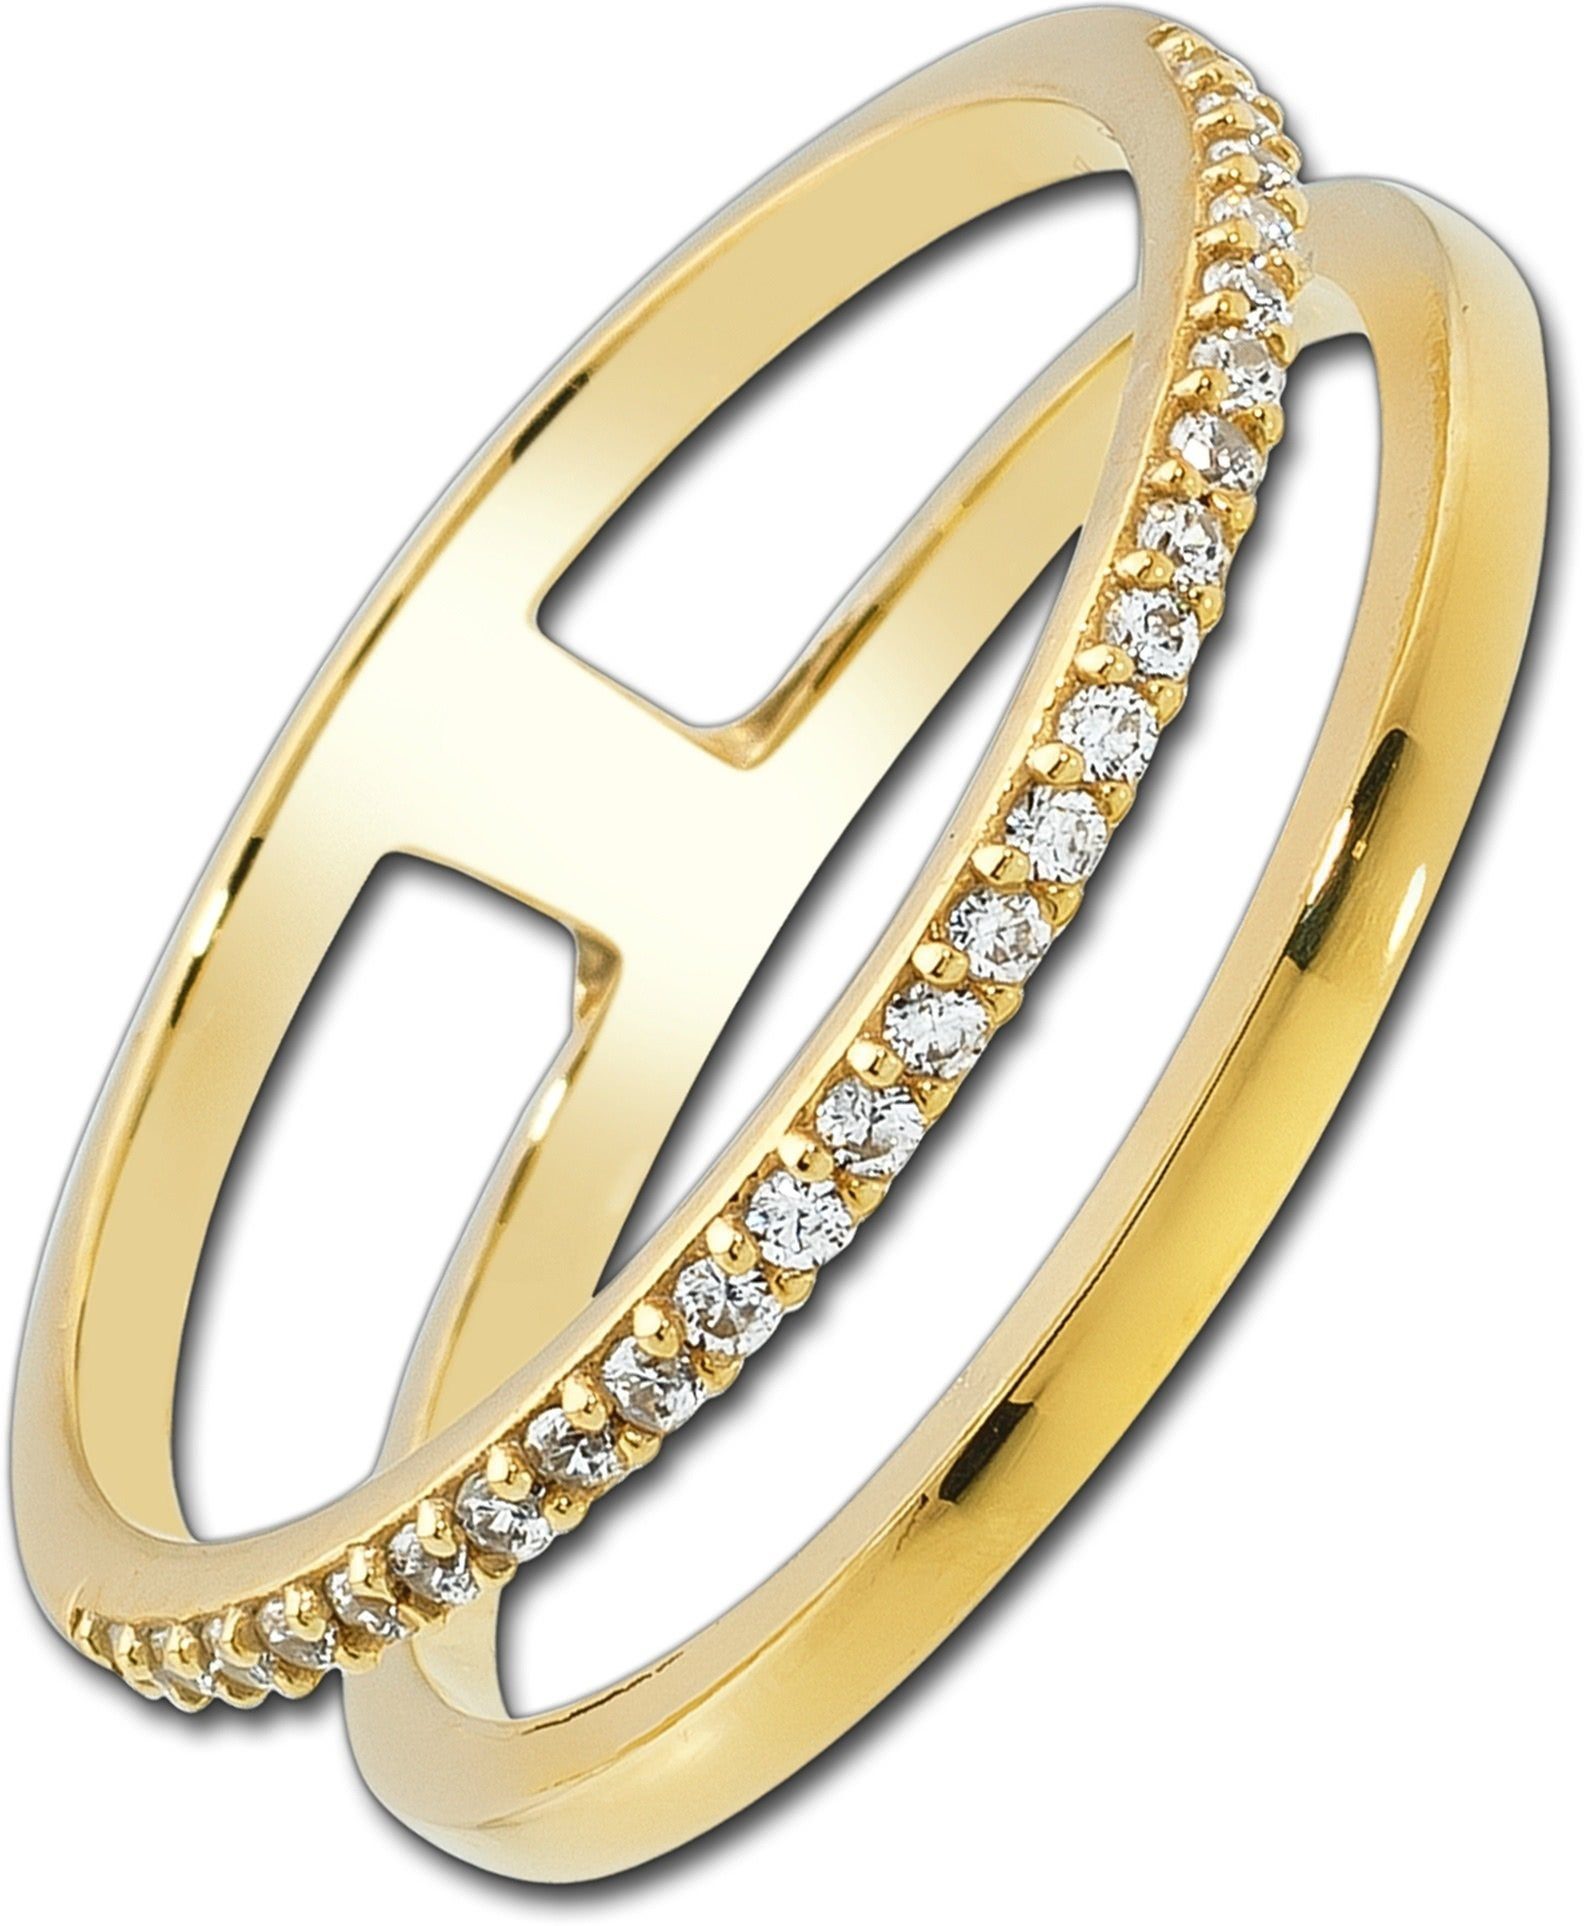 Balia Goldring Balia Ring für Damen 333 Gelbgold (Fingerring), Fingerring Größe 58 (18,5), 333 Gelbgold - 8 Karat (Doppel gold) Gold